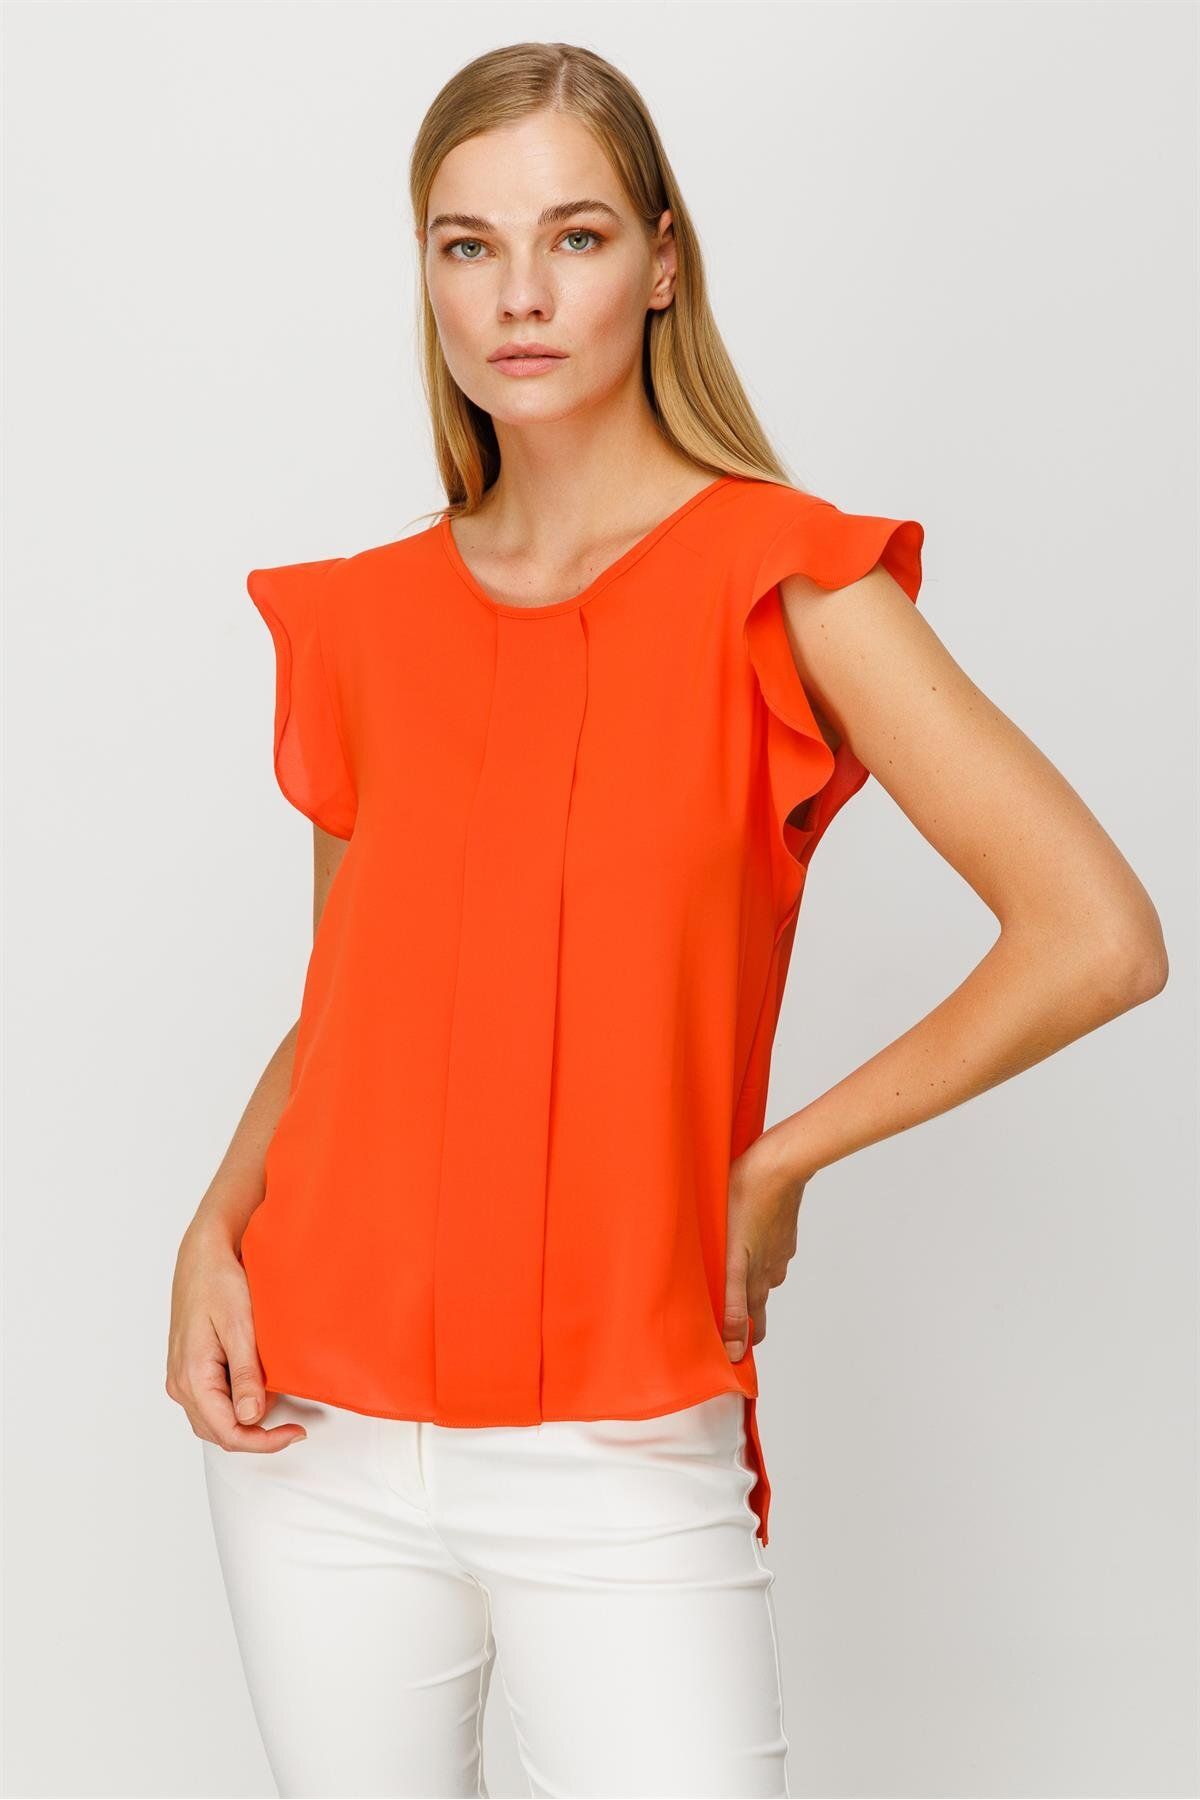 Moda İlgi Modailgi Kolları Volanlı Bluz Orange